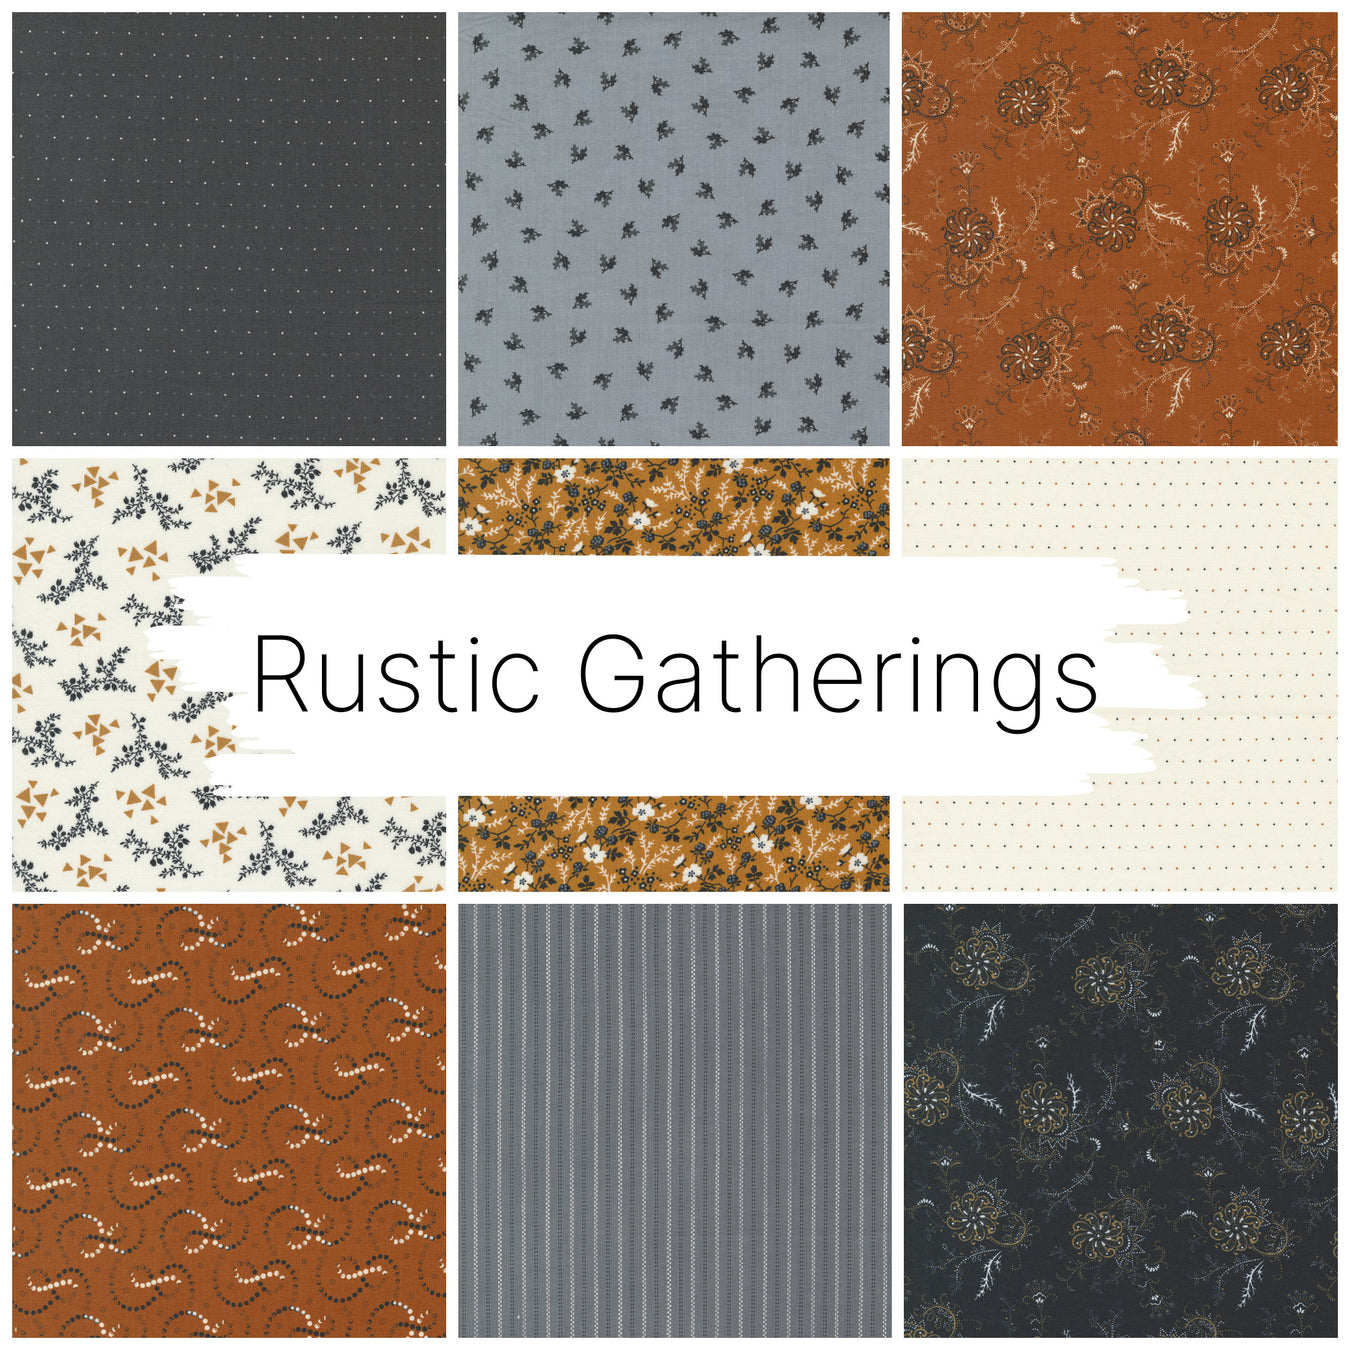 Rustic Gatherings